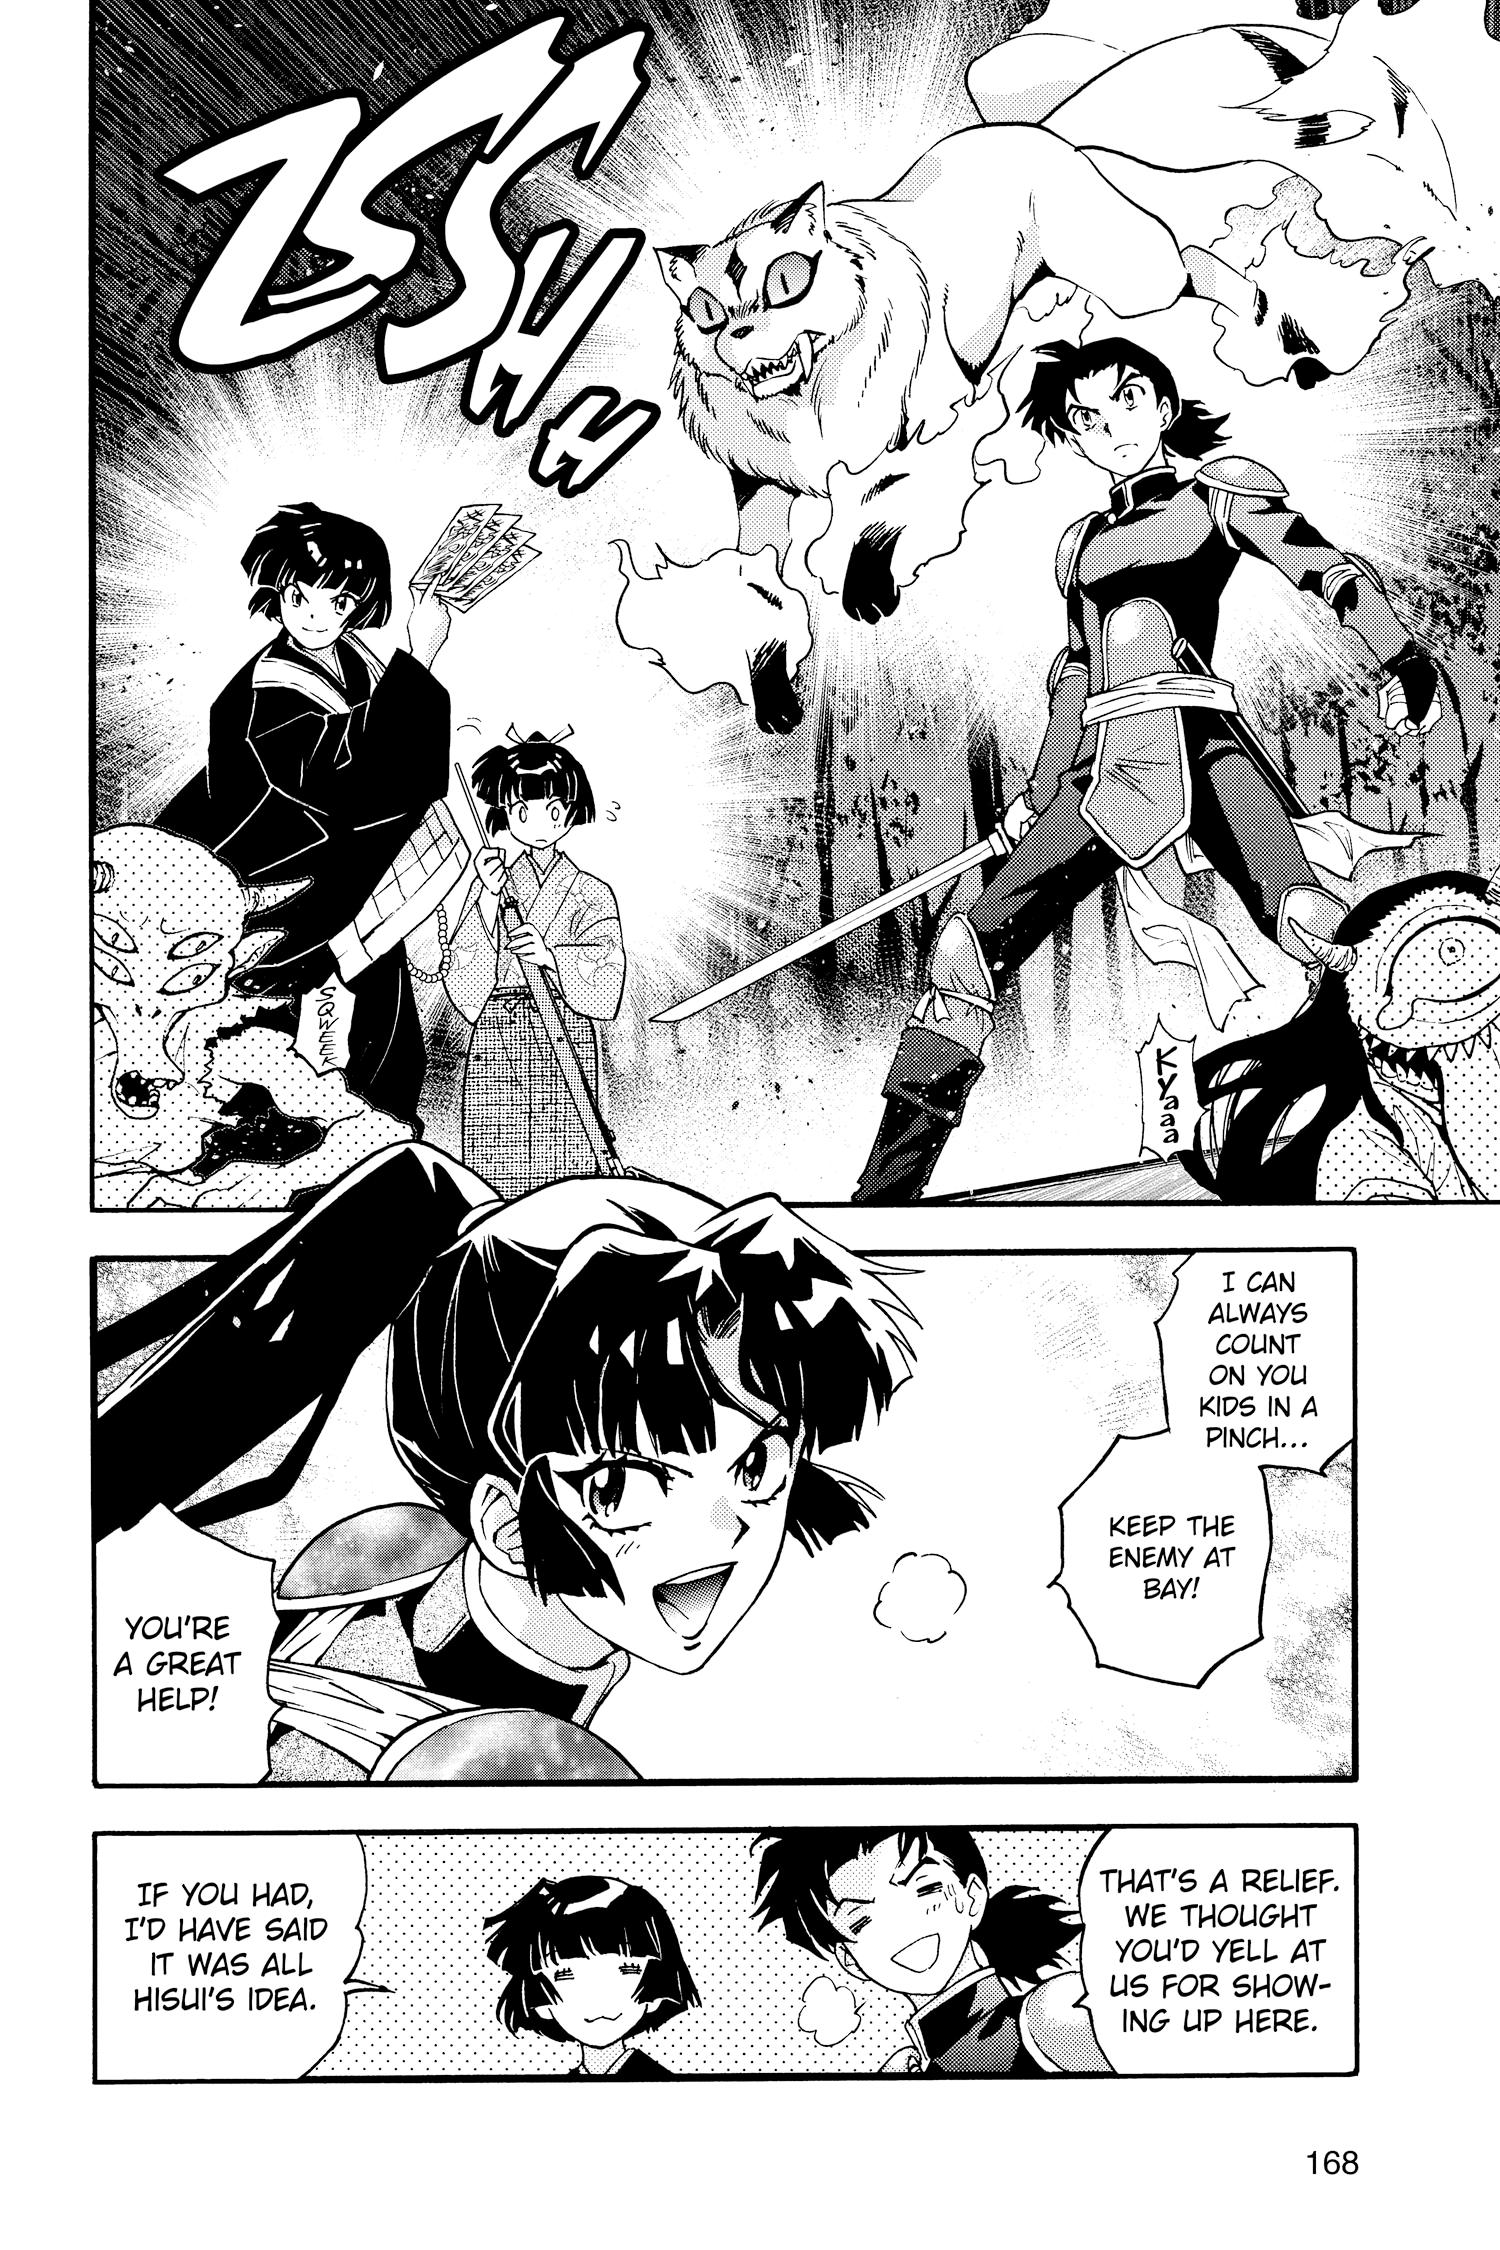 Yashahime manga chapter 23 part 2 : r/Yashahime